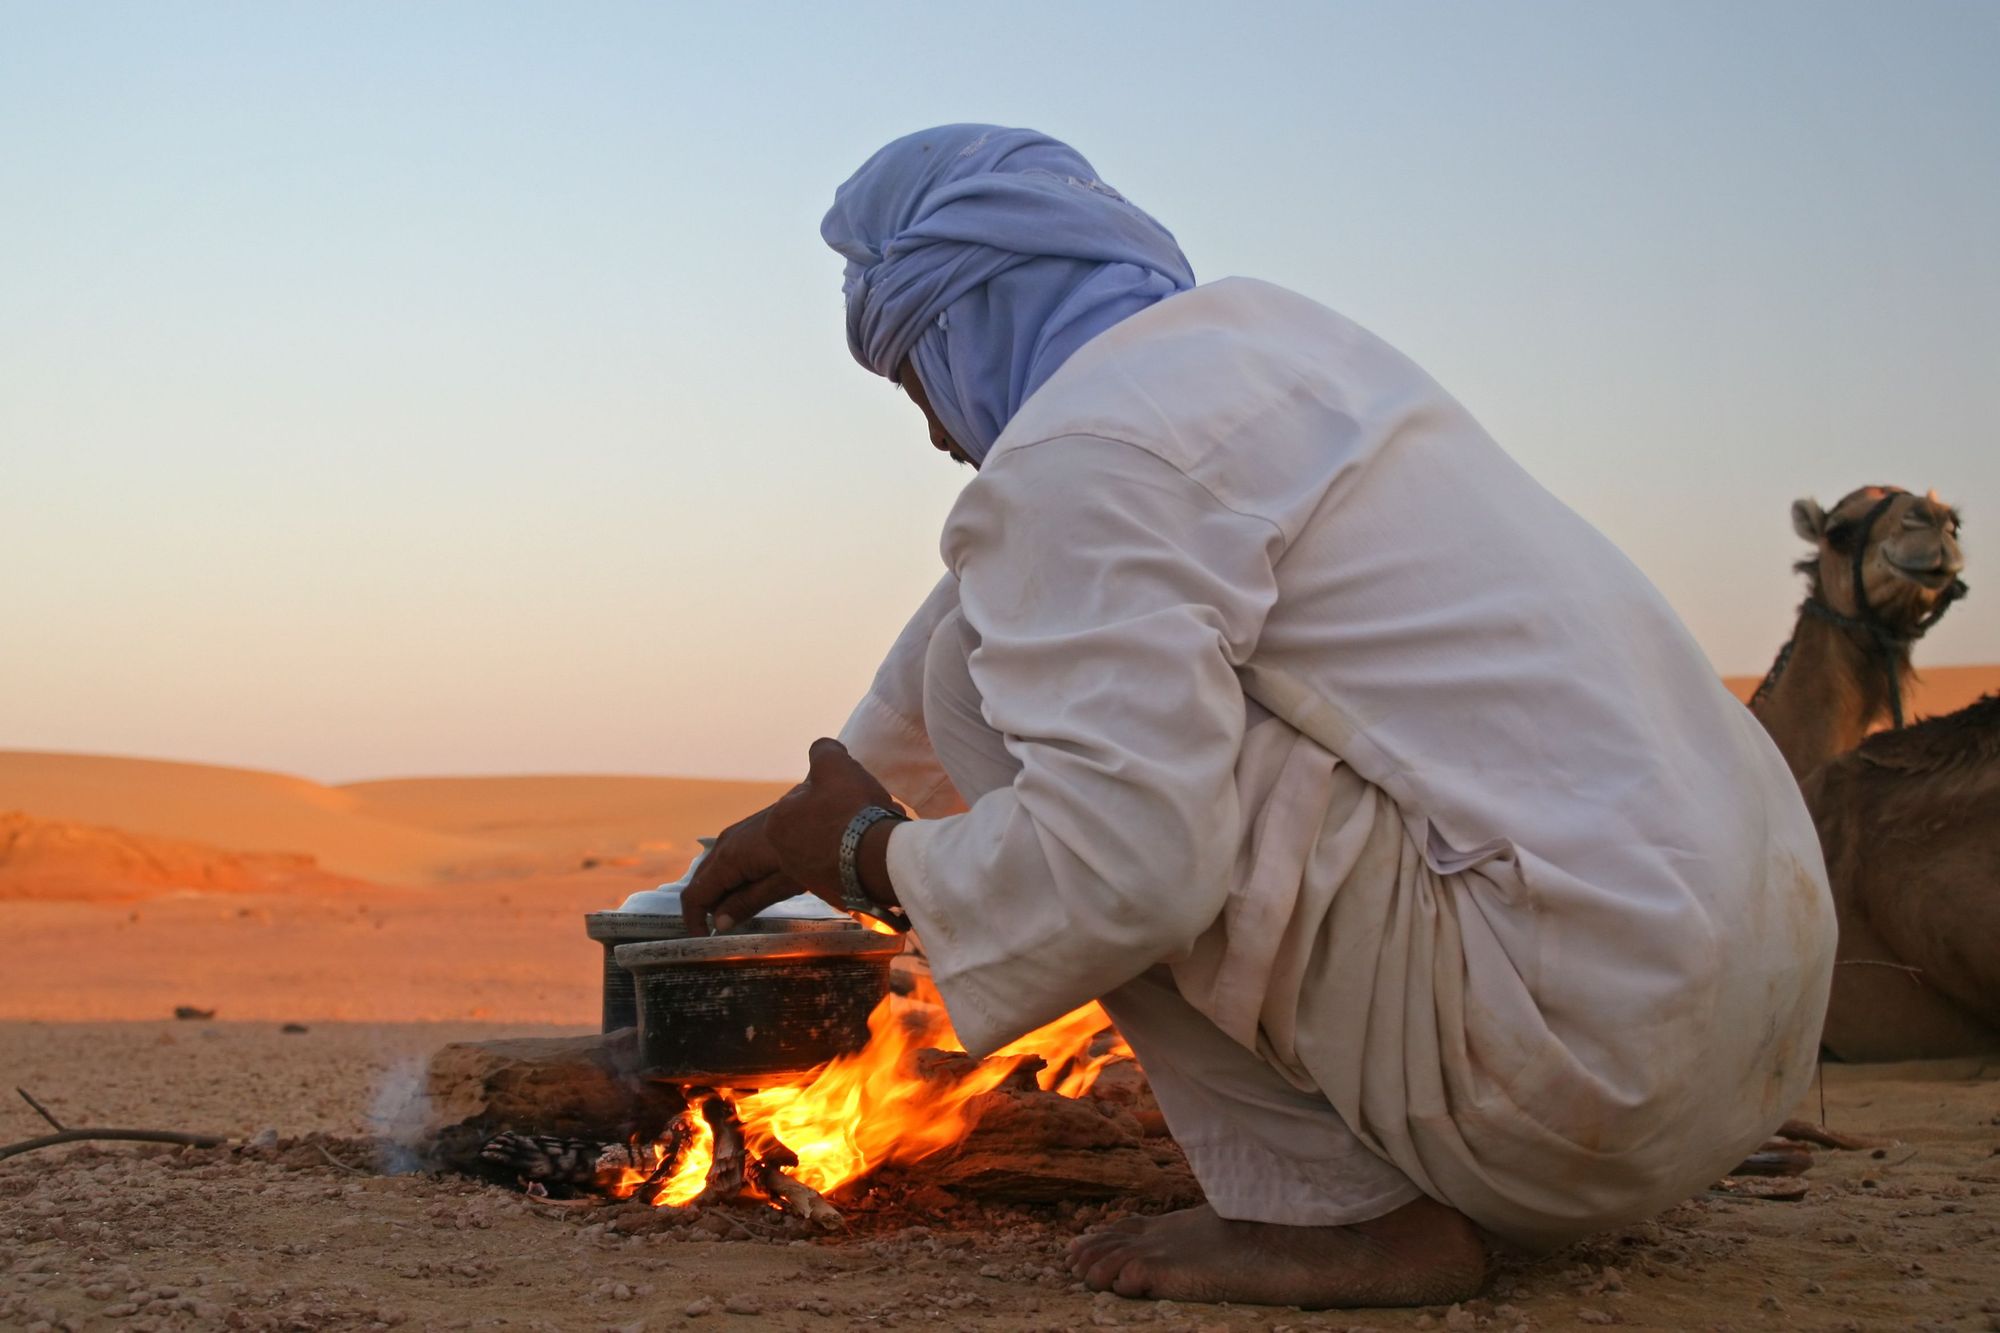 A Bedouin man cooks over an open fire in Wadi Rum desert, Jordan.